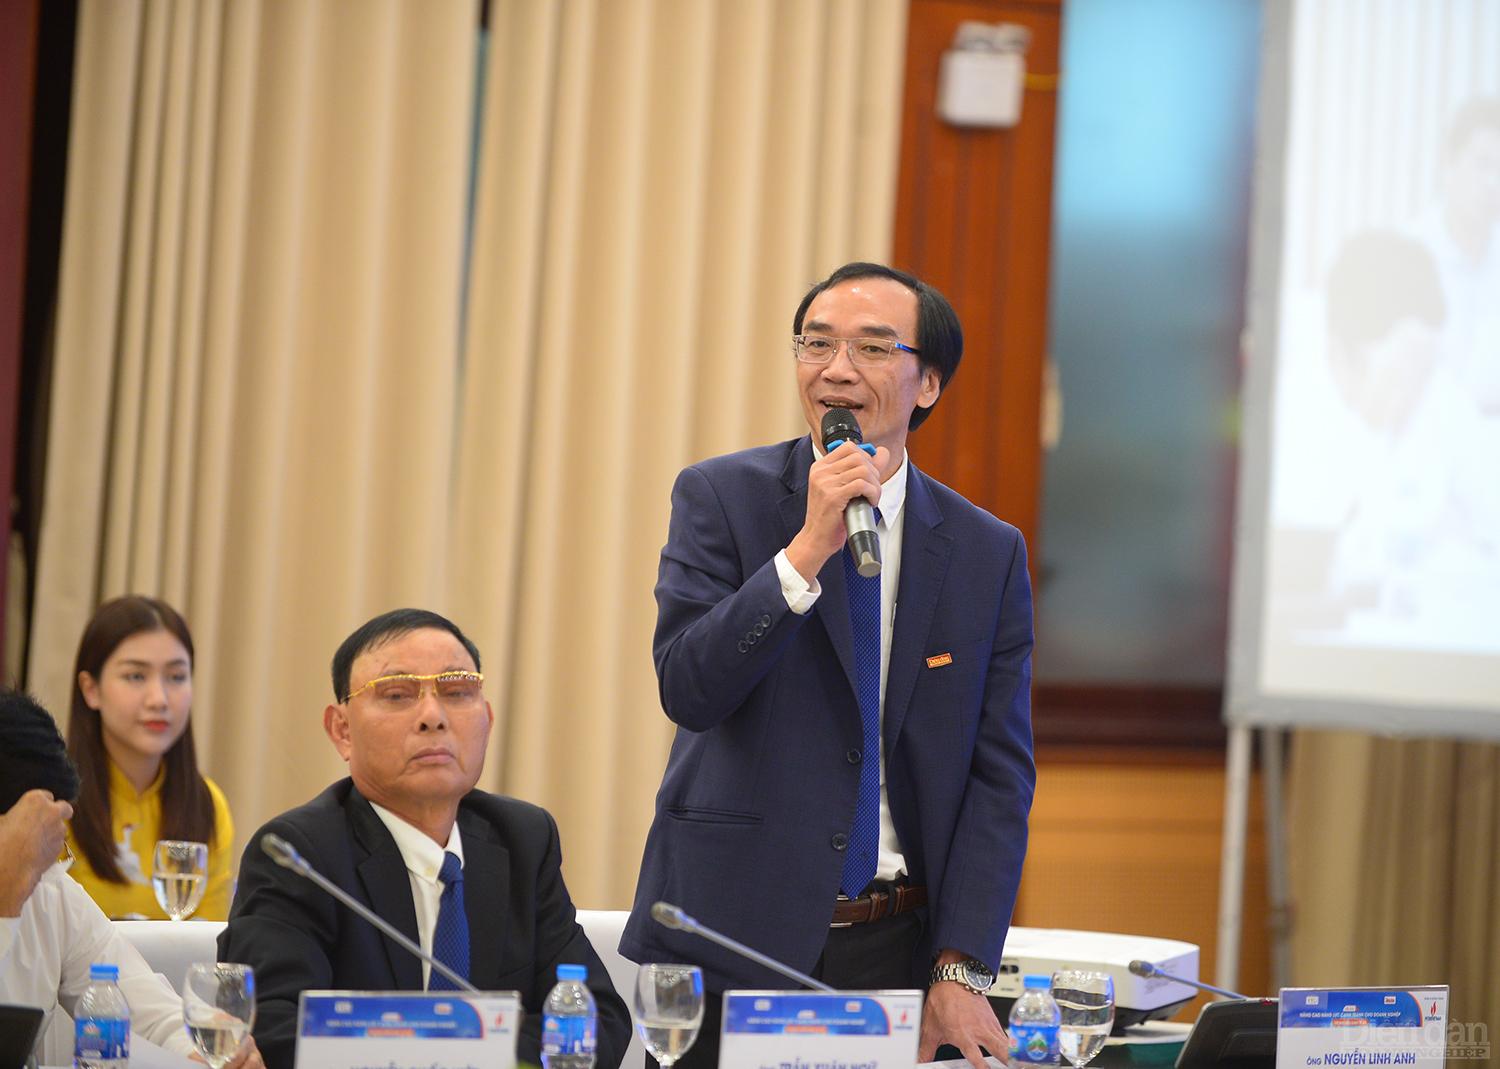 Nhà báo Nguyễn Linh Anh – Phó Tổng biên tập phụ trách Tạp chí Diễn đàn Doanh nghiệp sẽ điều phối phiên.